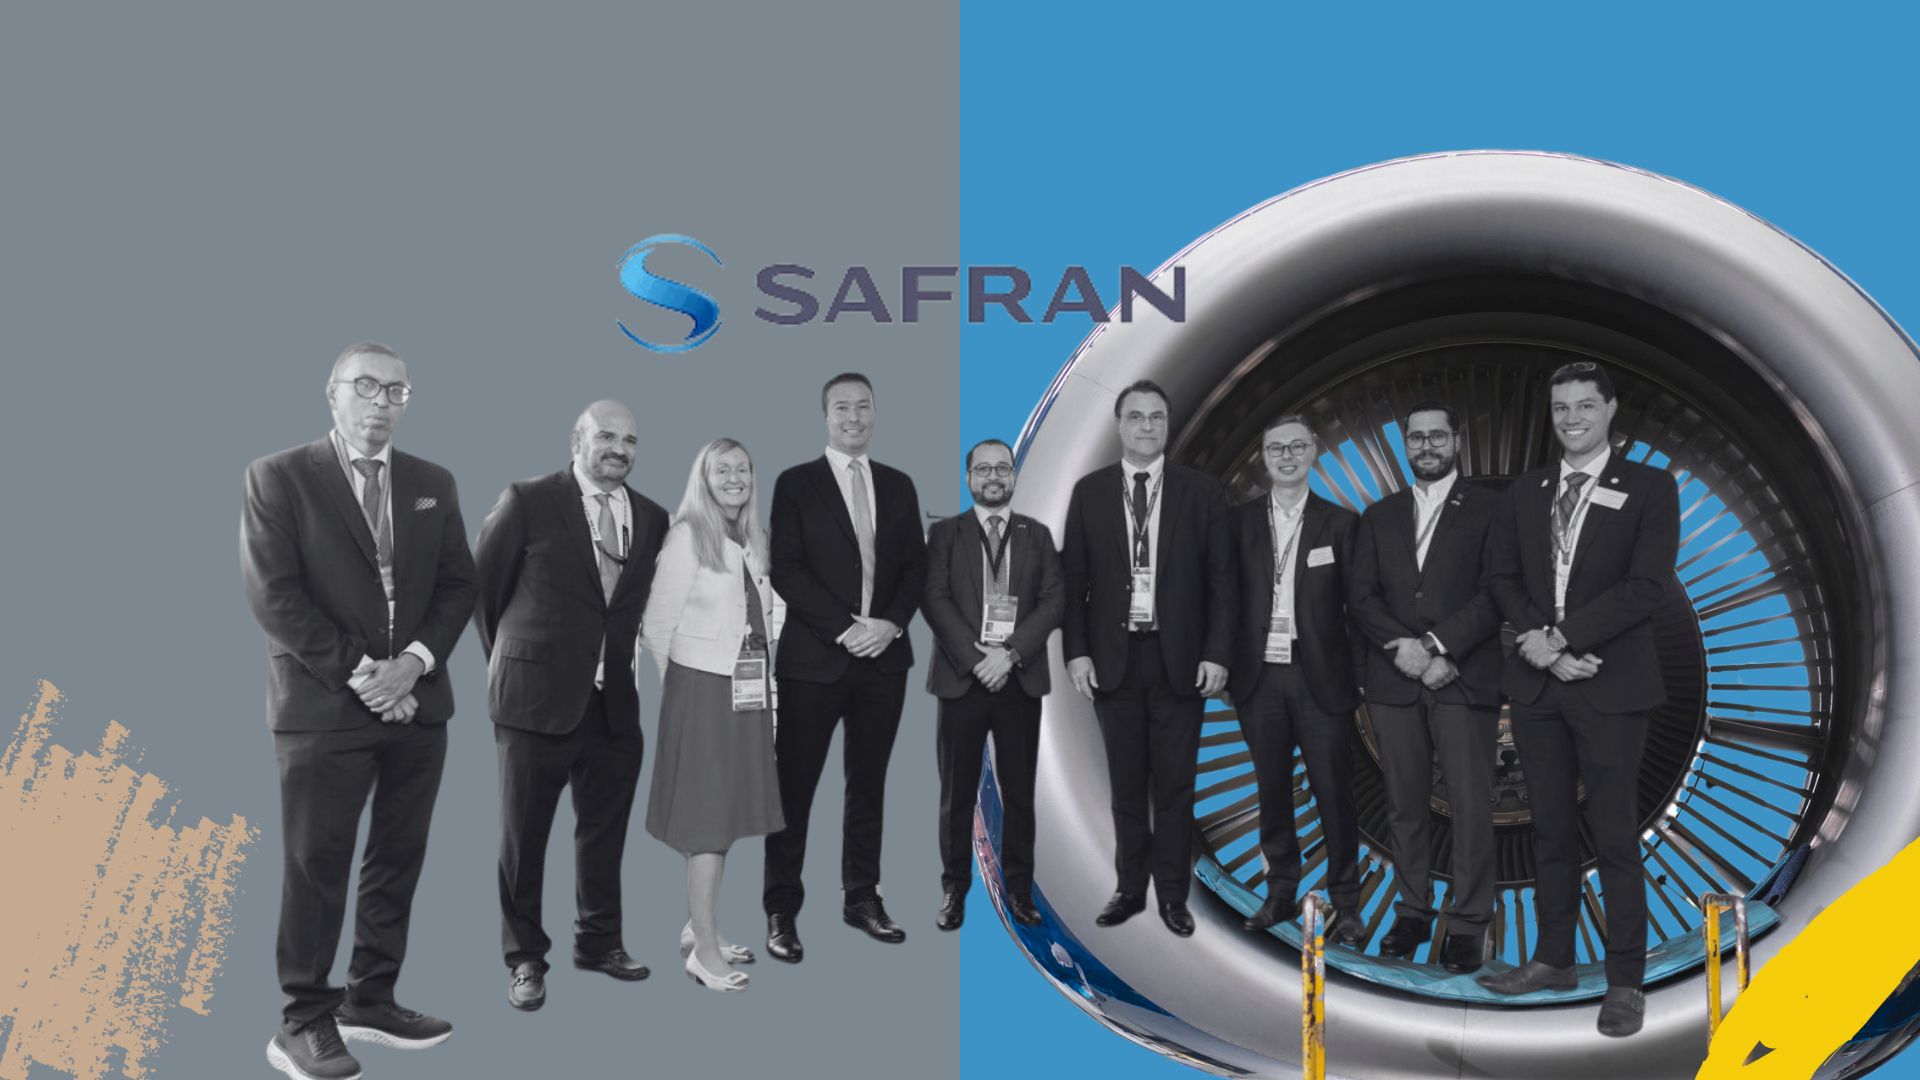 Safran invertirá 6 millones de euros en una nueva planta en Chihuahua, creando 225 empleos directos. La fábrica, operada por Safran Aerosystems, se inaugurará en 2025 y contará con energía solar.